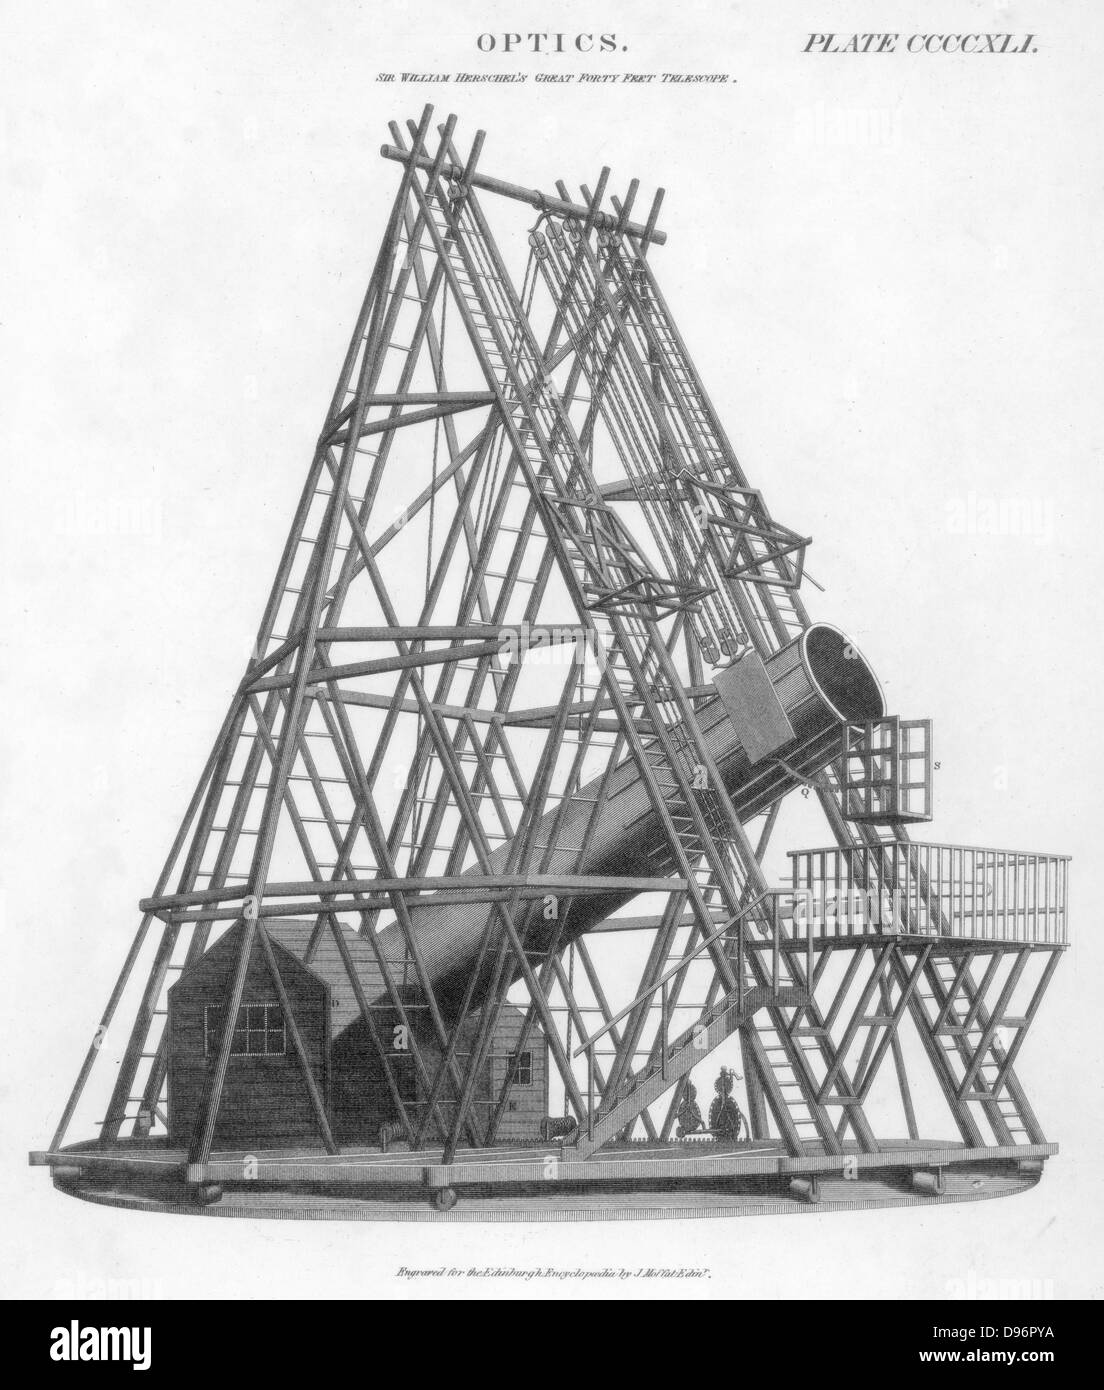 Télescope de 40 pieds/12 m longueur focale, 1789. Construit par William Herschel (1738-1822) l'astronome anglais d'origine allemande, cet instrument était la plus grande du monde, a eu un 4 ft/1,2 m miroir. Fait des observations Herschel avec ce télescope, mais utilisaient plus d'un plus petit à 18 cm/46 instrument. À partir de 'l' Encyclopédie d'Édimbourg. (Paris, 1807-1829). La gravure. Banque D'Images